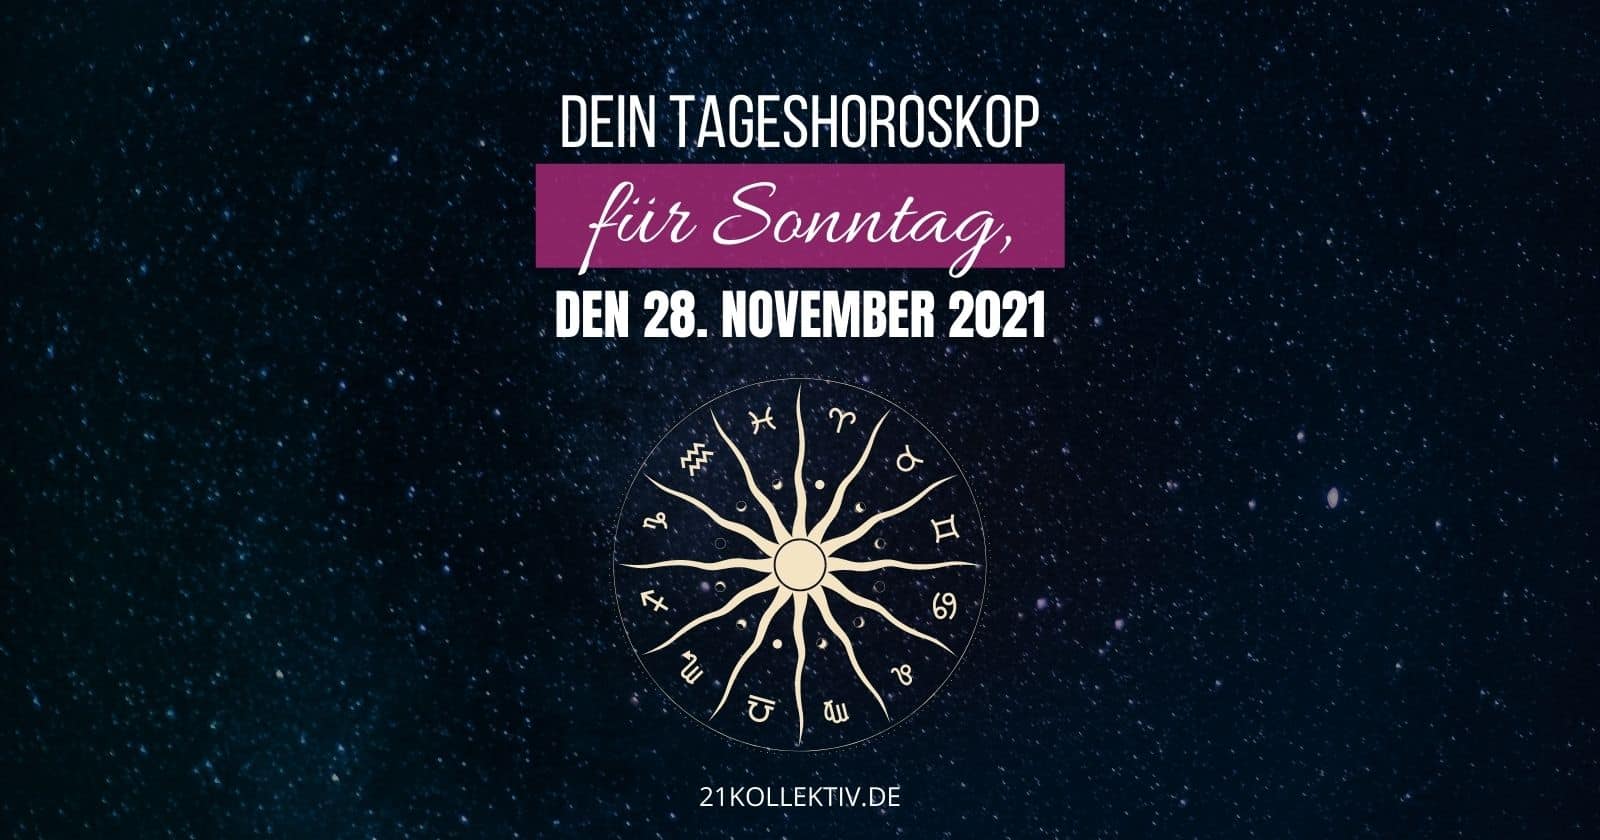 Dein Tageshoroskop für Sonntag, den 28. November 2021